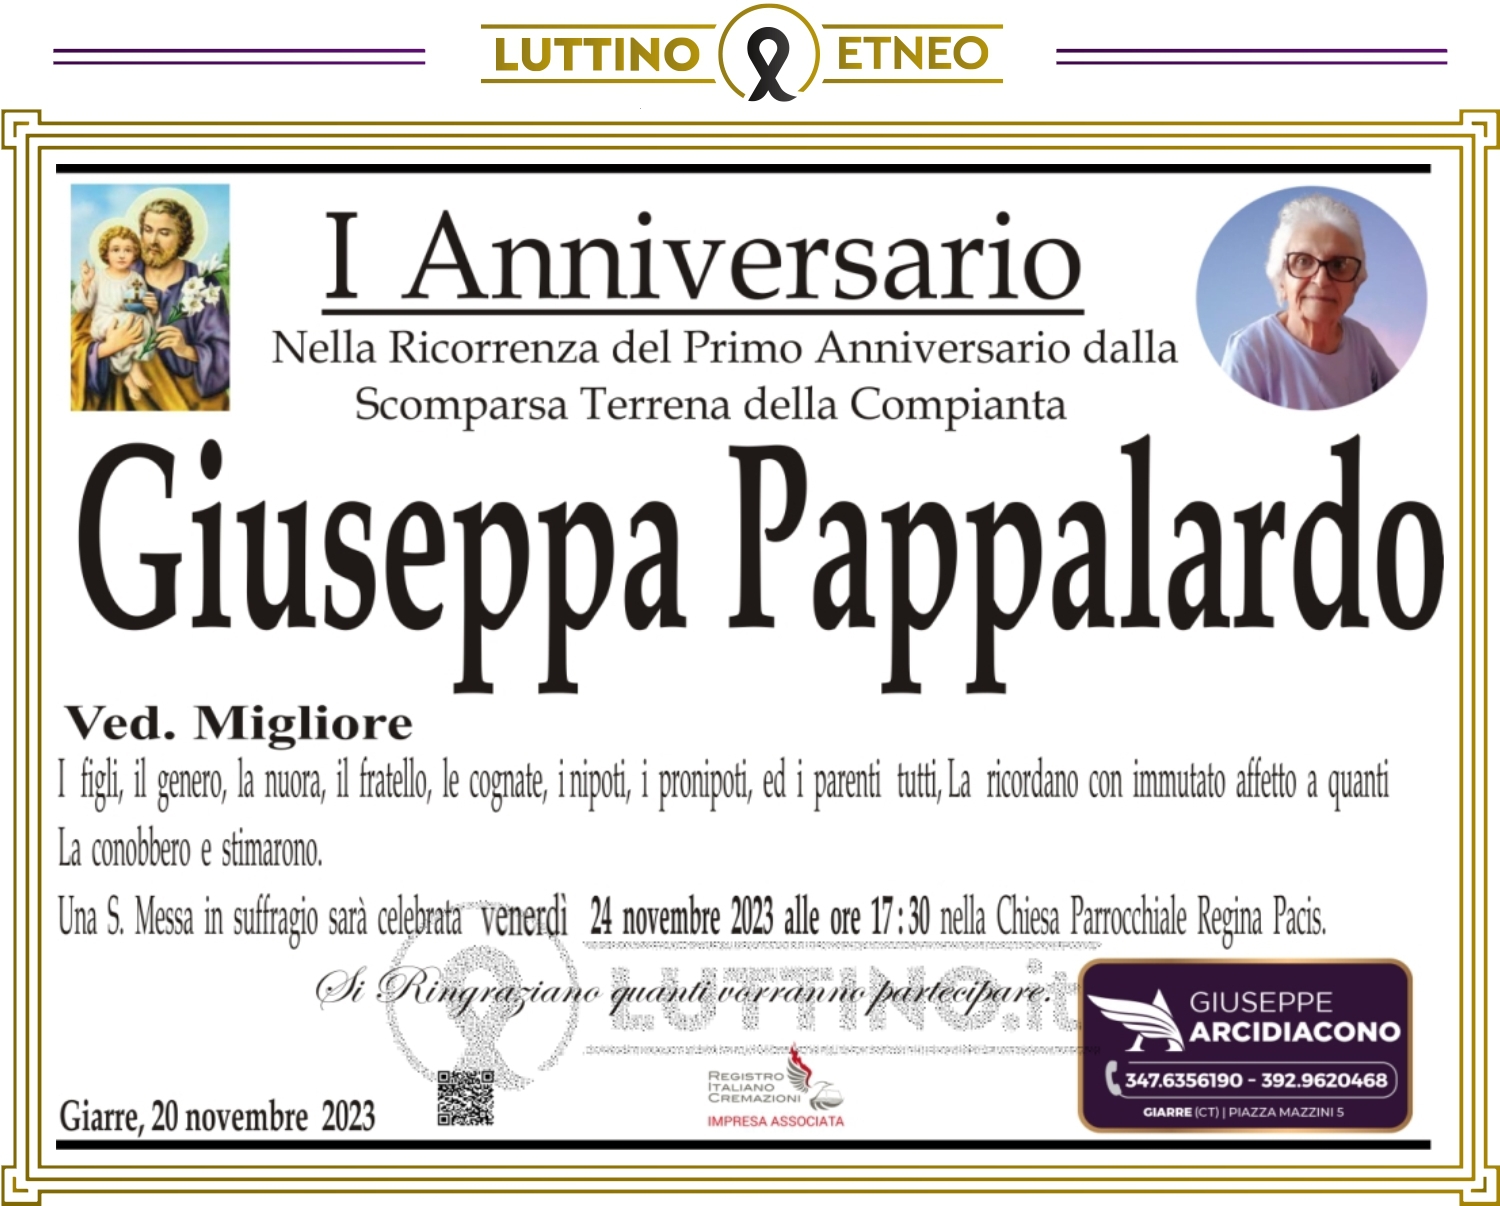 Giuseppa Pappalardo  